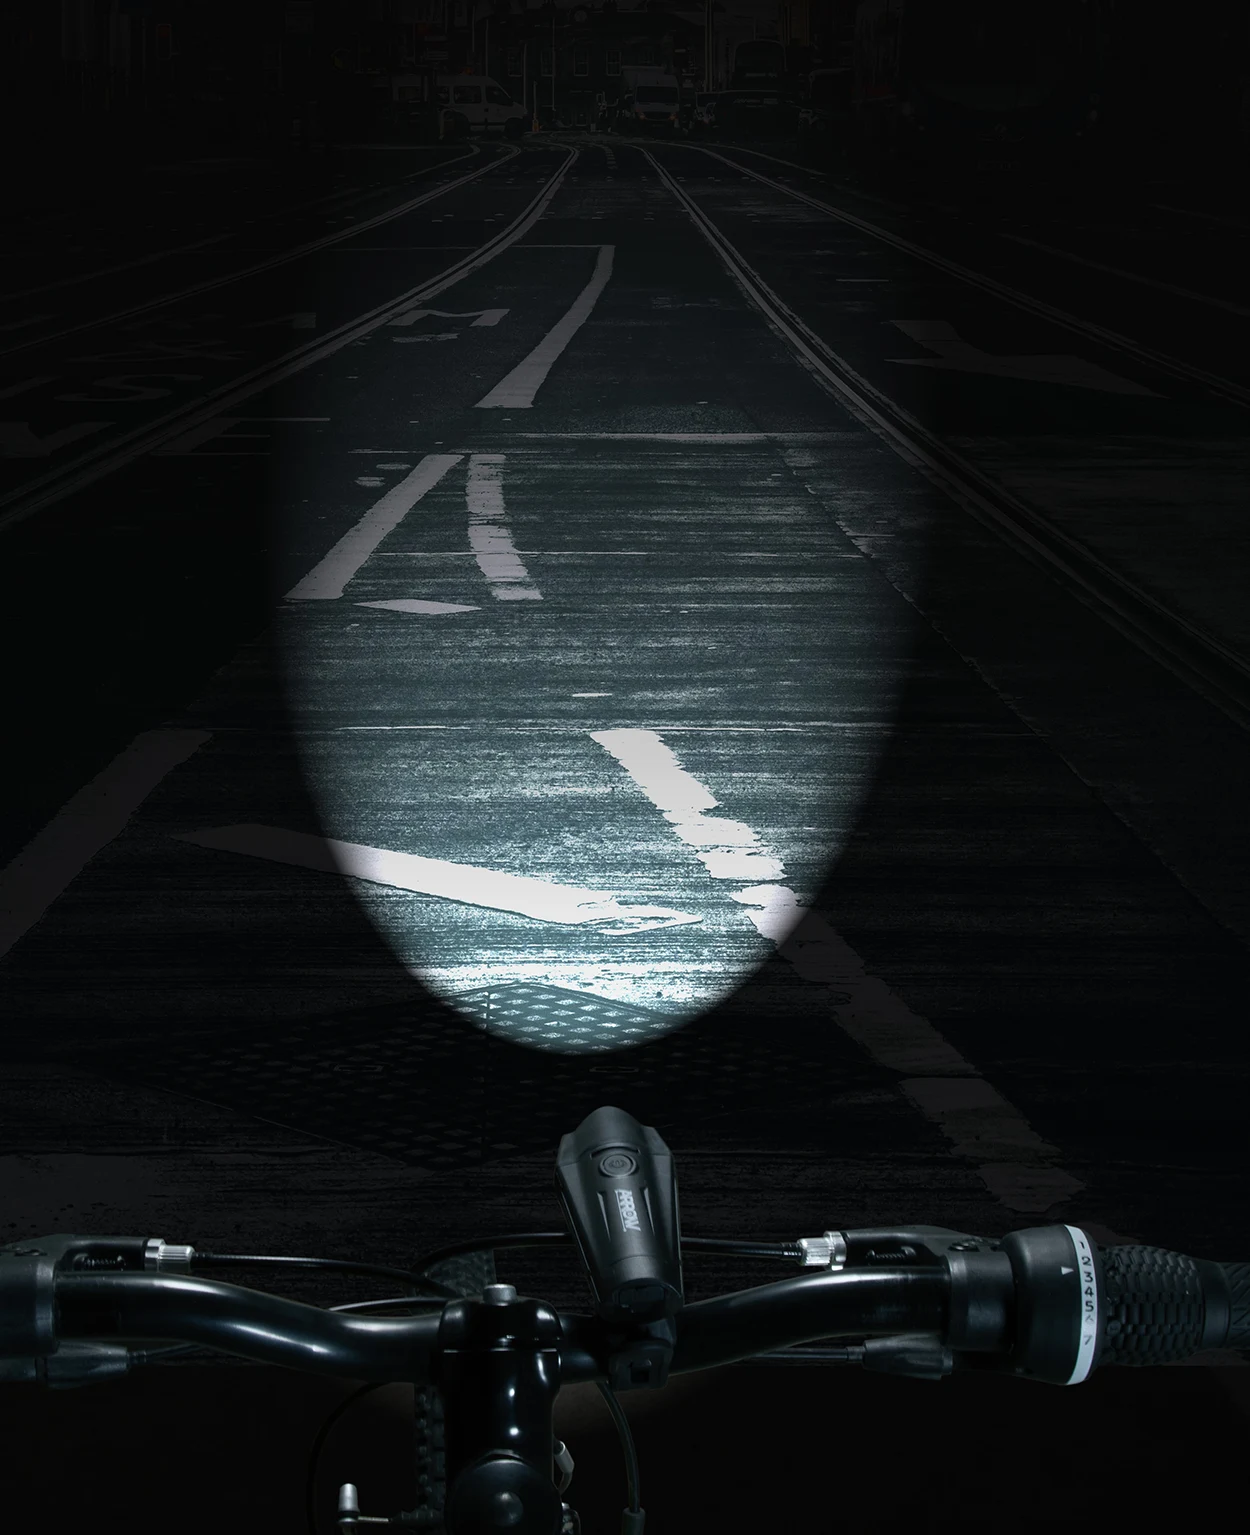 Amazon Bike LED Light Lifestyle Photography